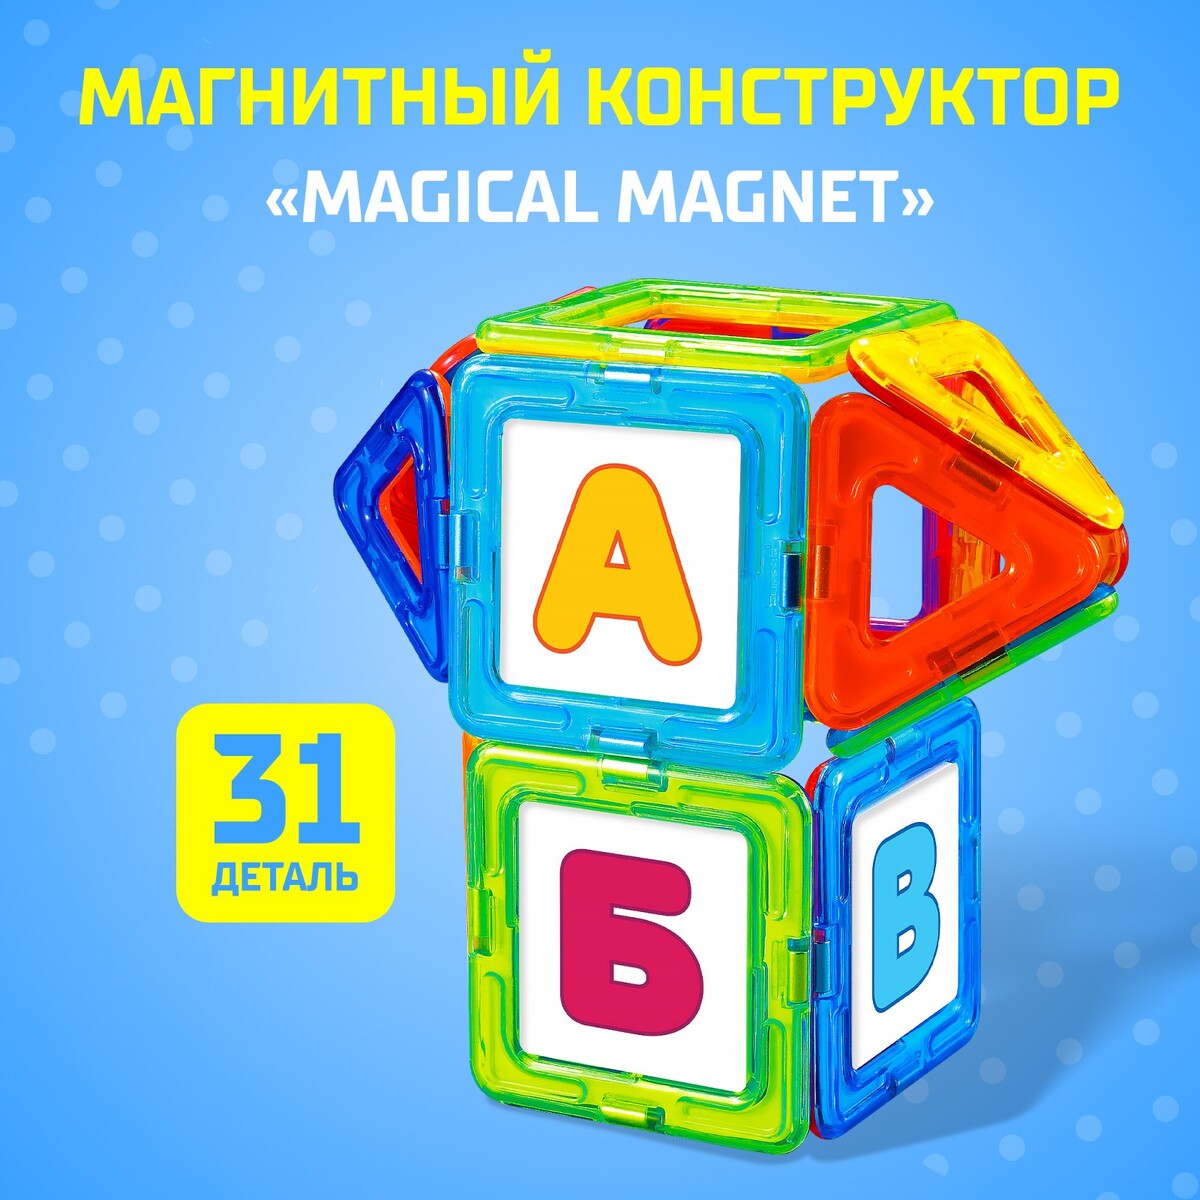 Магнитный конструктор magical magnet, 31 деталь, детали матовые магнитный конструктор magical magnet 22 детали детали матовые